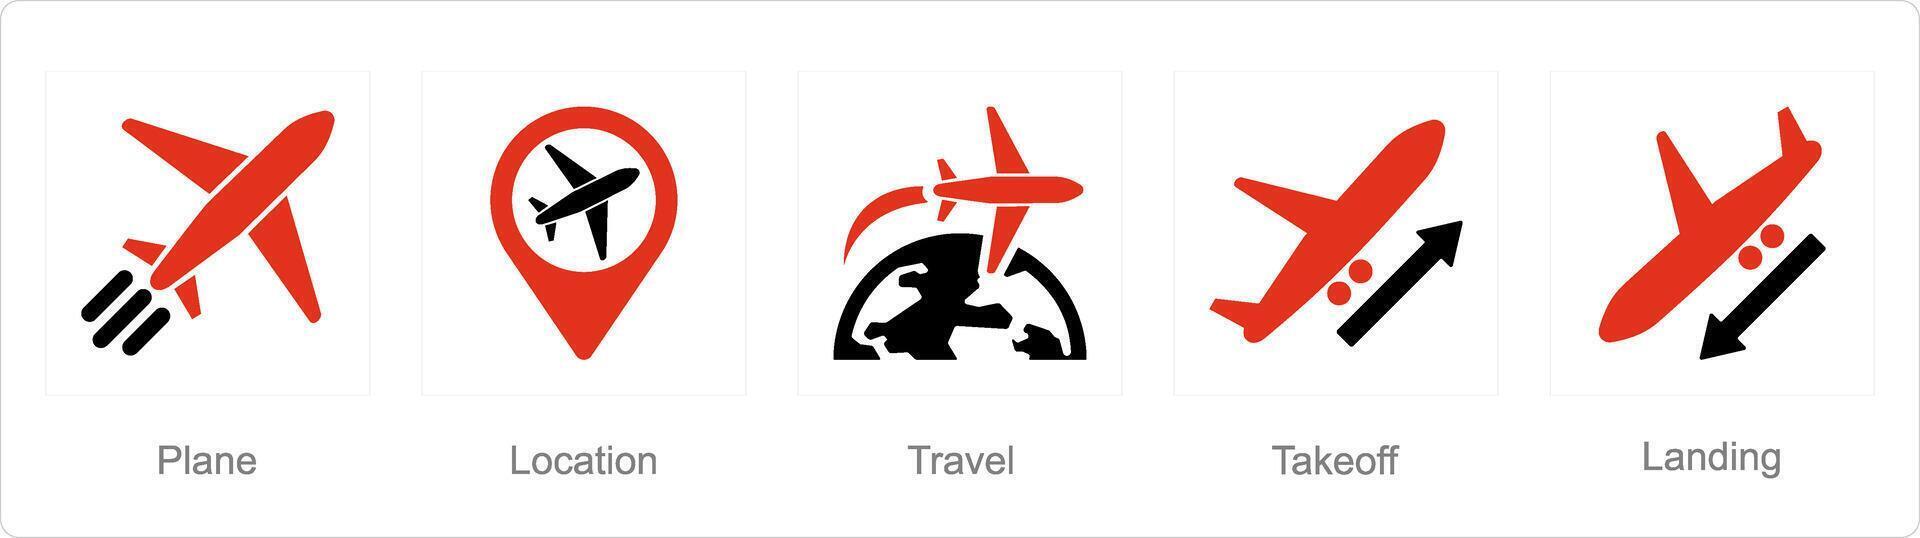 un conjunto de 5 5 aeropuerto íconos como avión, ubicación, viaje vector